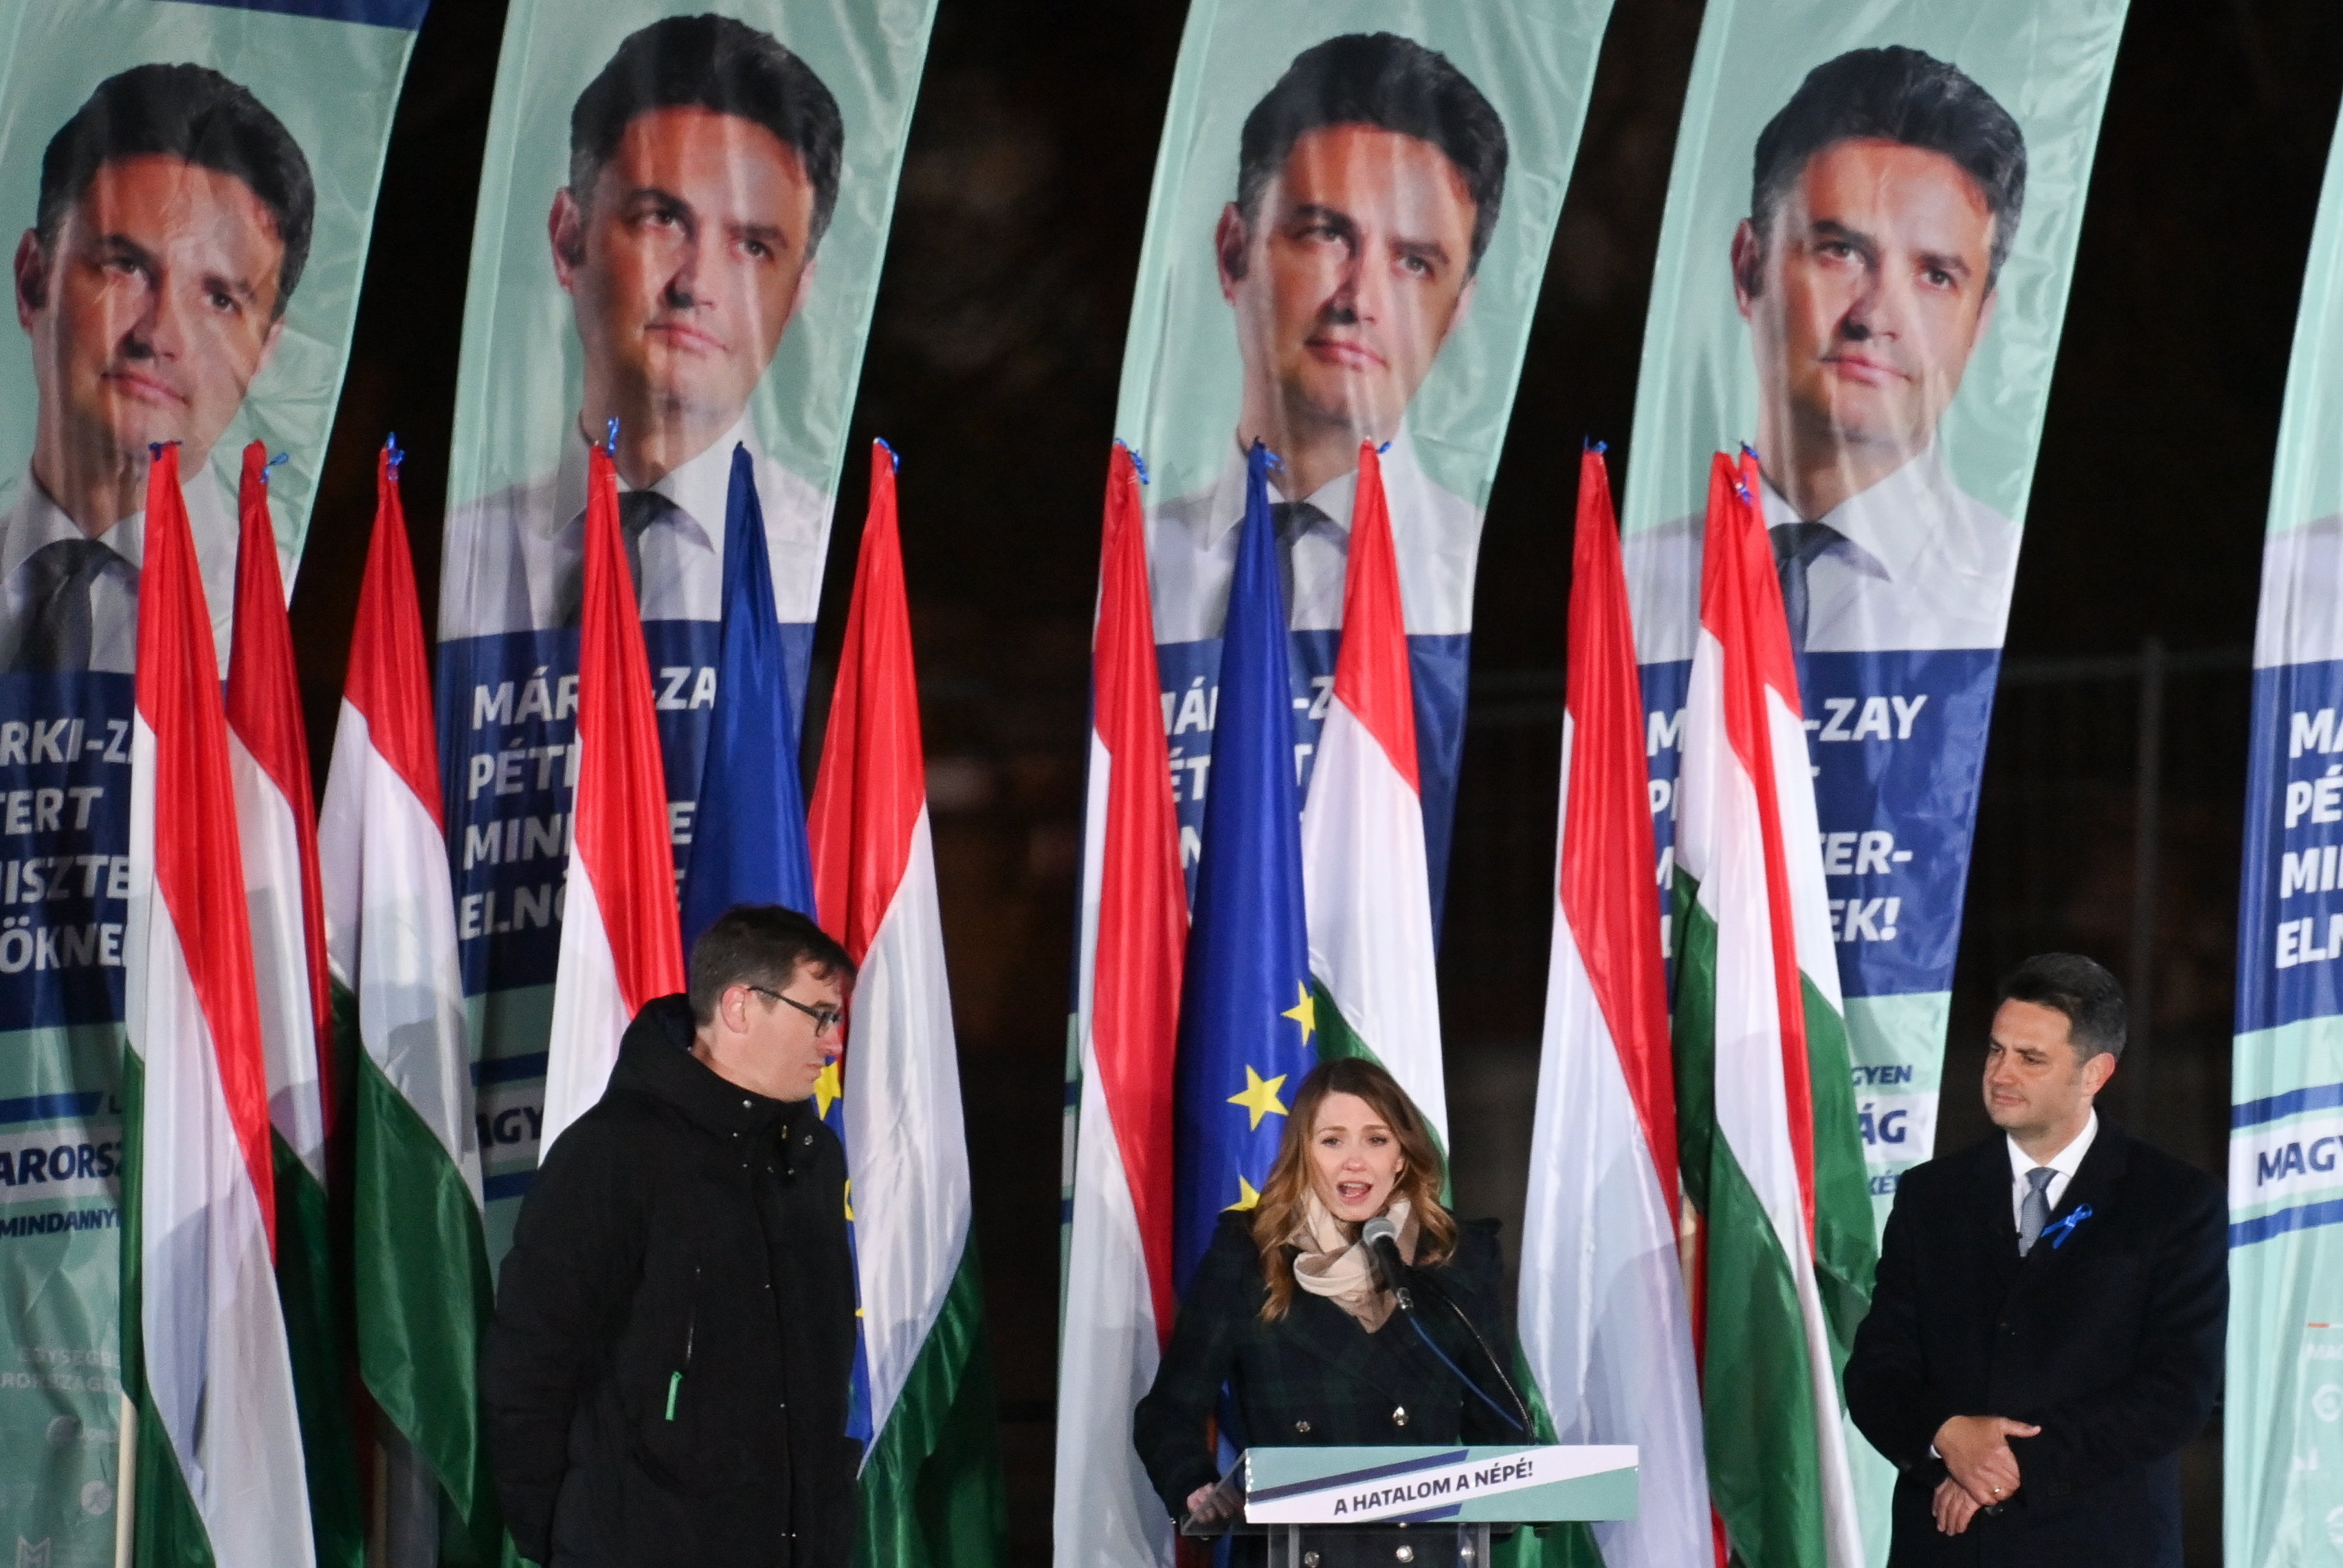 Donáth Anna, a Momentum elnöke beszédet mond, mellette Márki-Zay Péter, az ellenzék közös miniszterelnök-jelöltje, a Mindenki Magyarországa Mozgalom elnöke  és Karácsony Gergely, a Párbeszéd társelnöke, főpolgármester az Egységben Magyarországért eredményváró rendezvényén, a Városligeti Műjégpályán